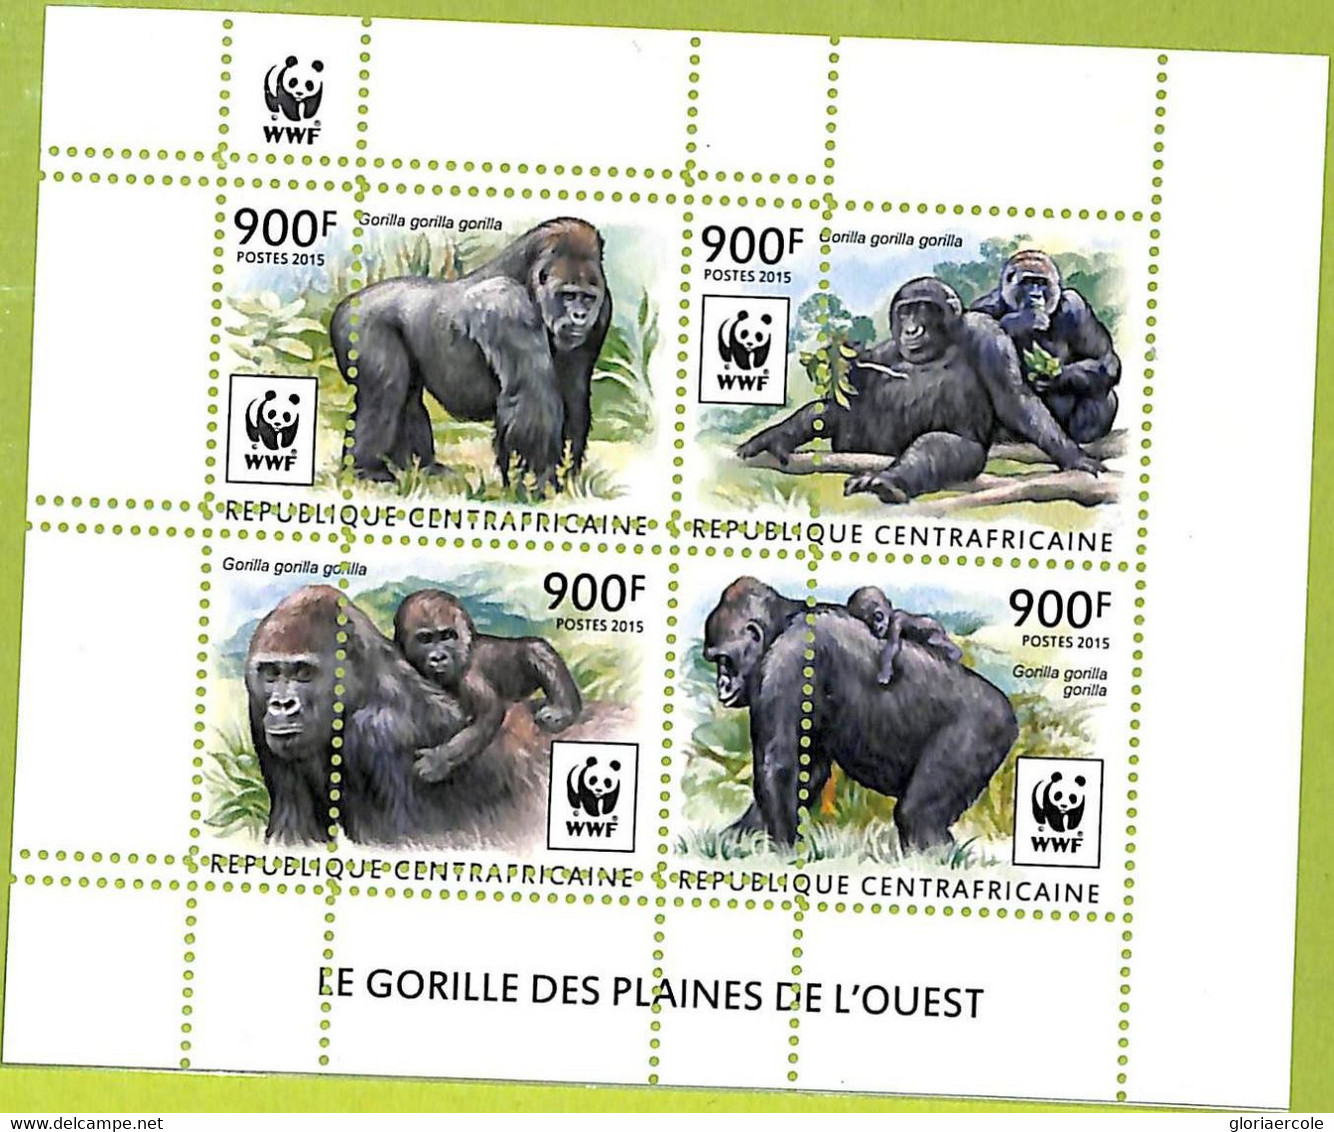 A7581 - CENTRAFRICAINE-ERROR MISPERF -Stamp Sheet -WWF -2015- ANIMALS : GORILLAS - Gorilla's